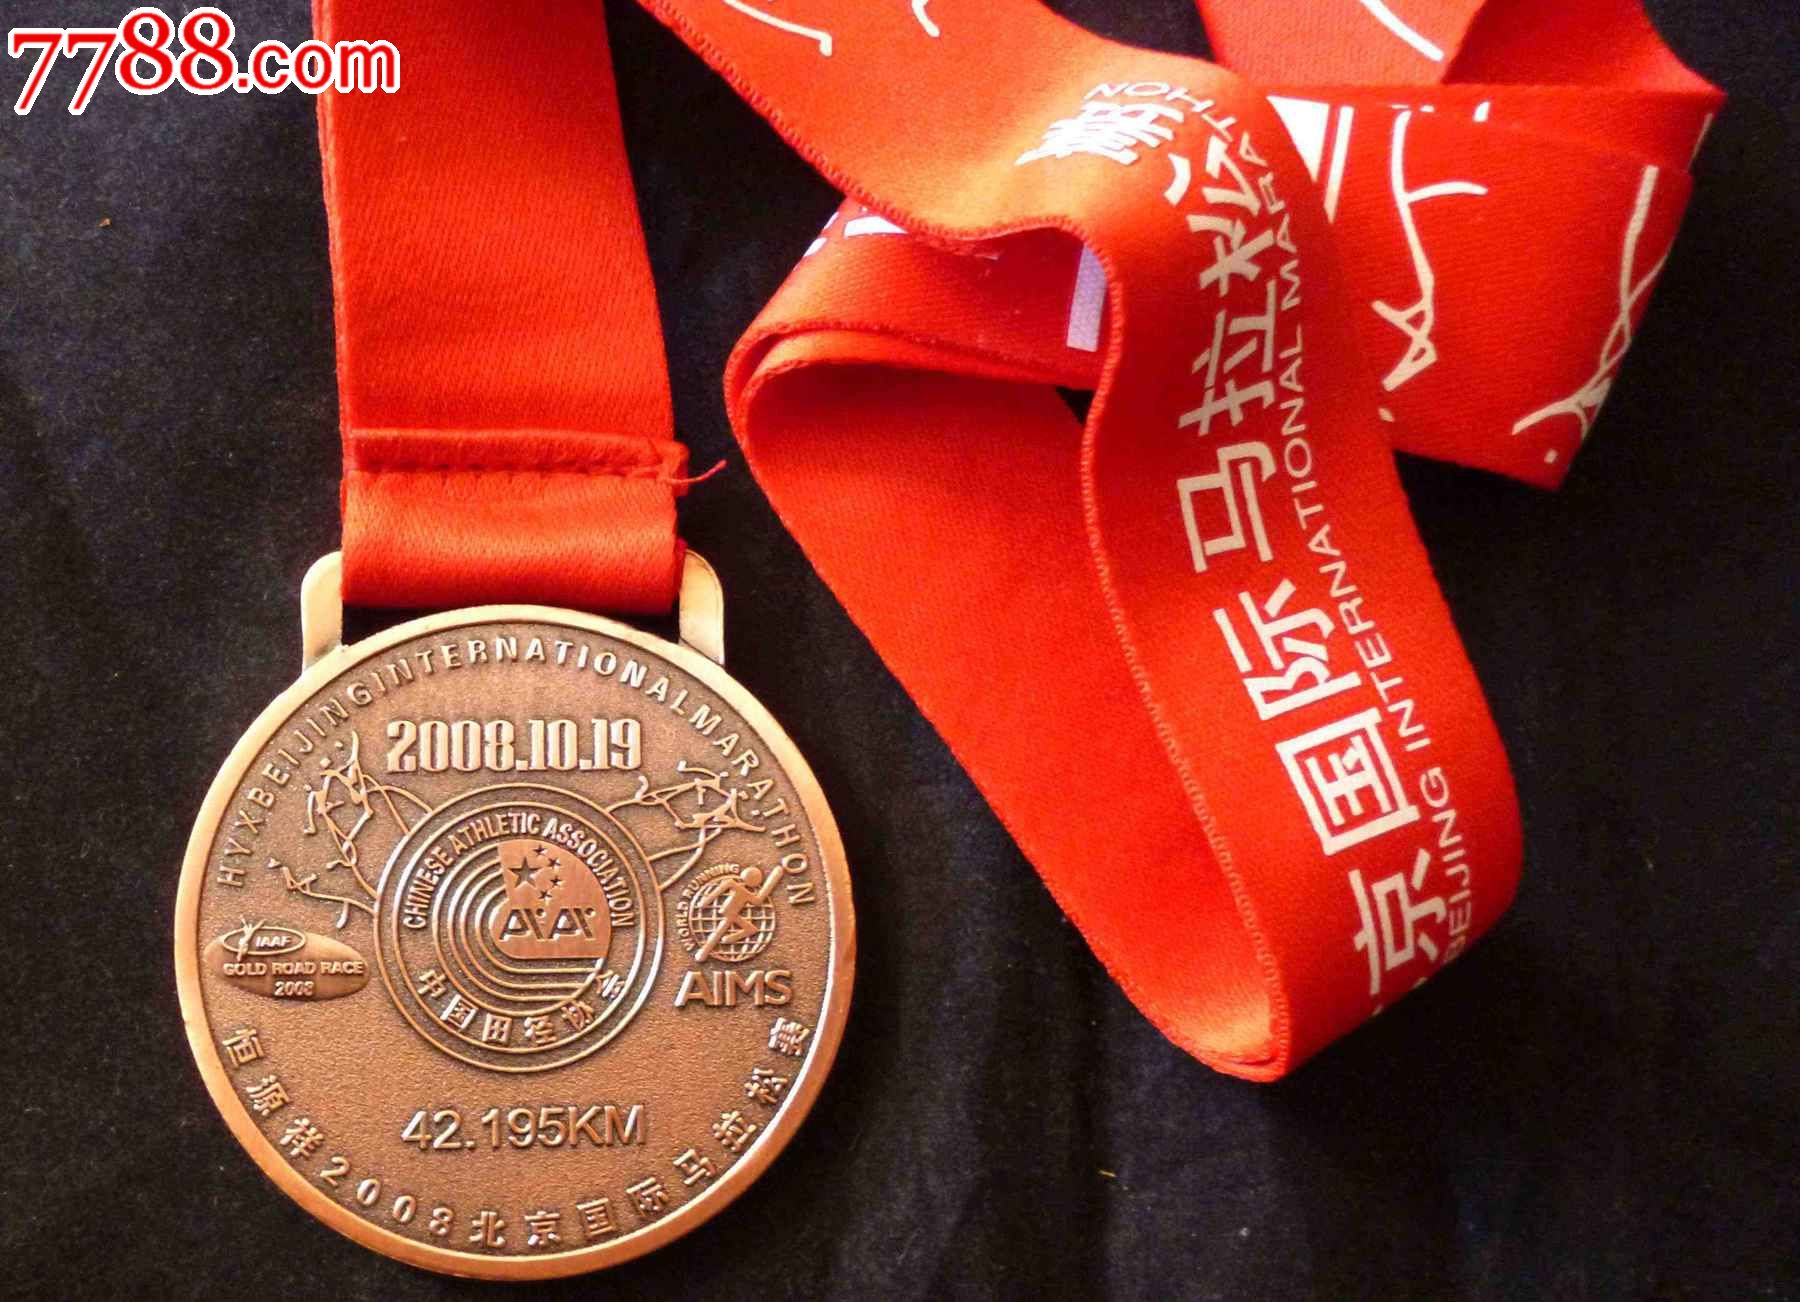 2008年北京国际马拉松纪念奖牌-价格:180元-s